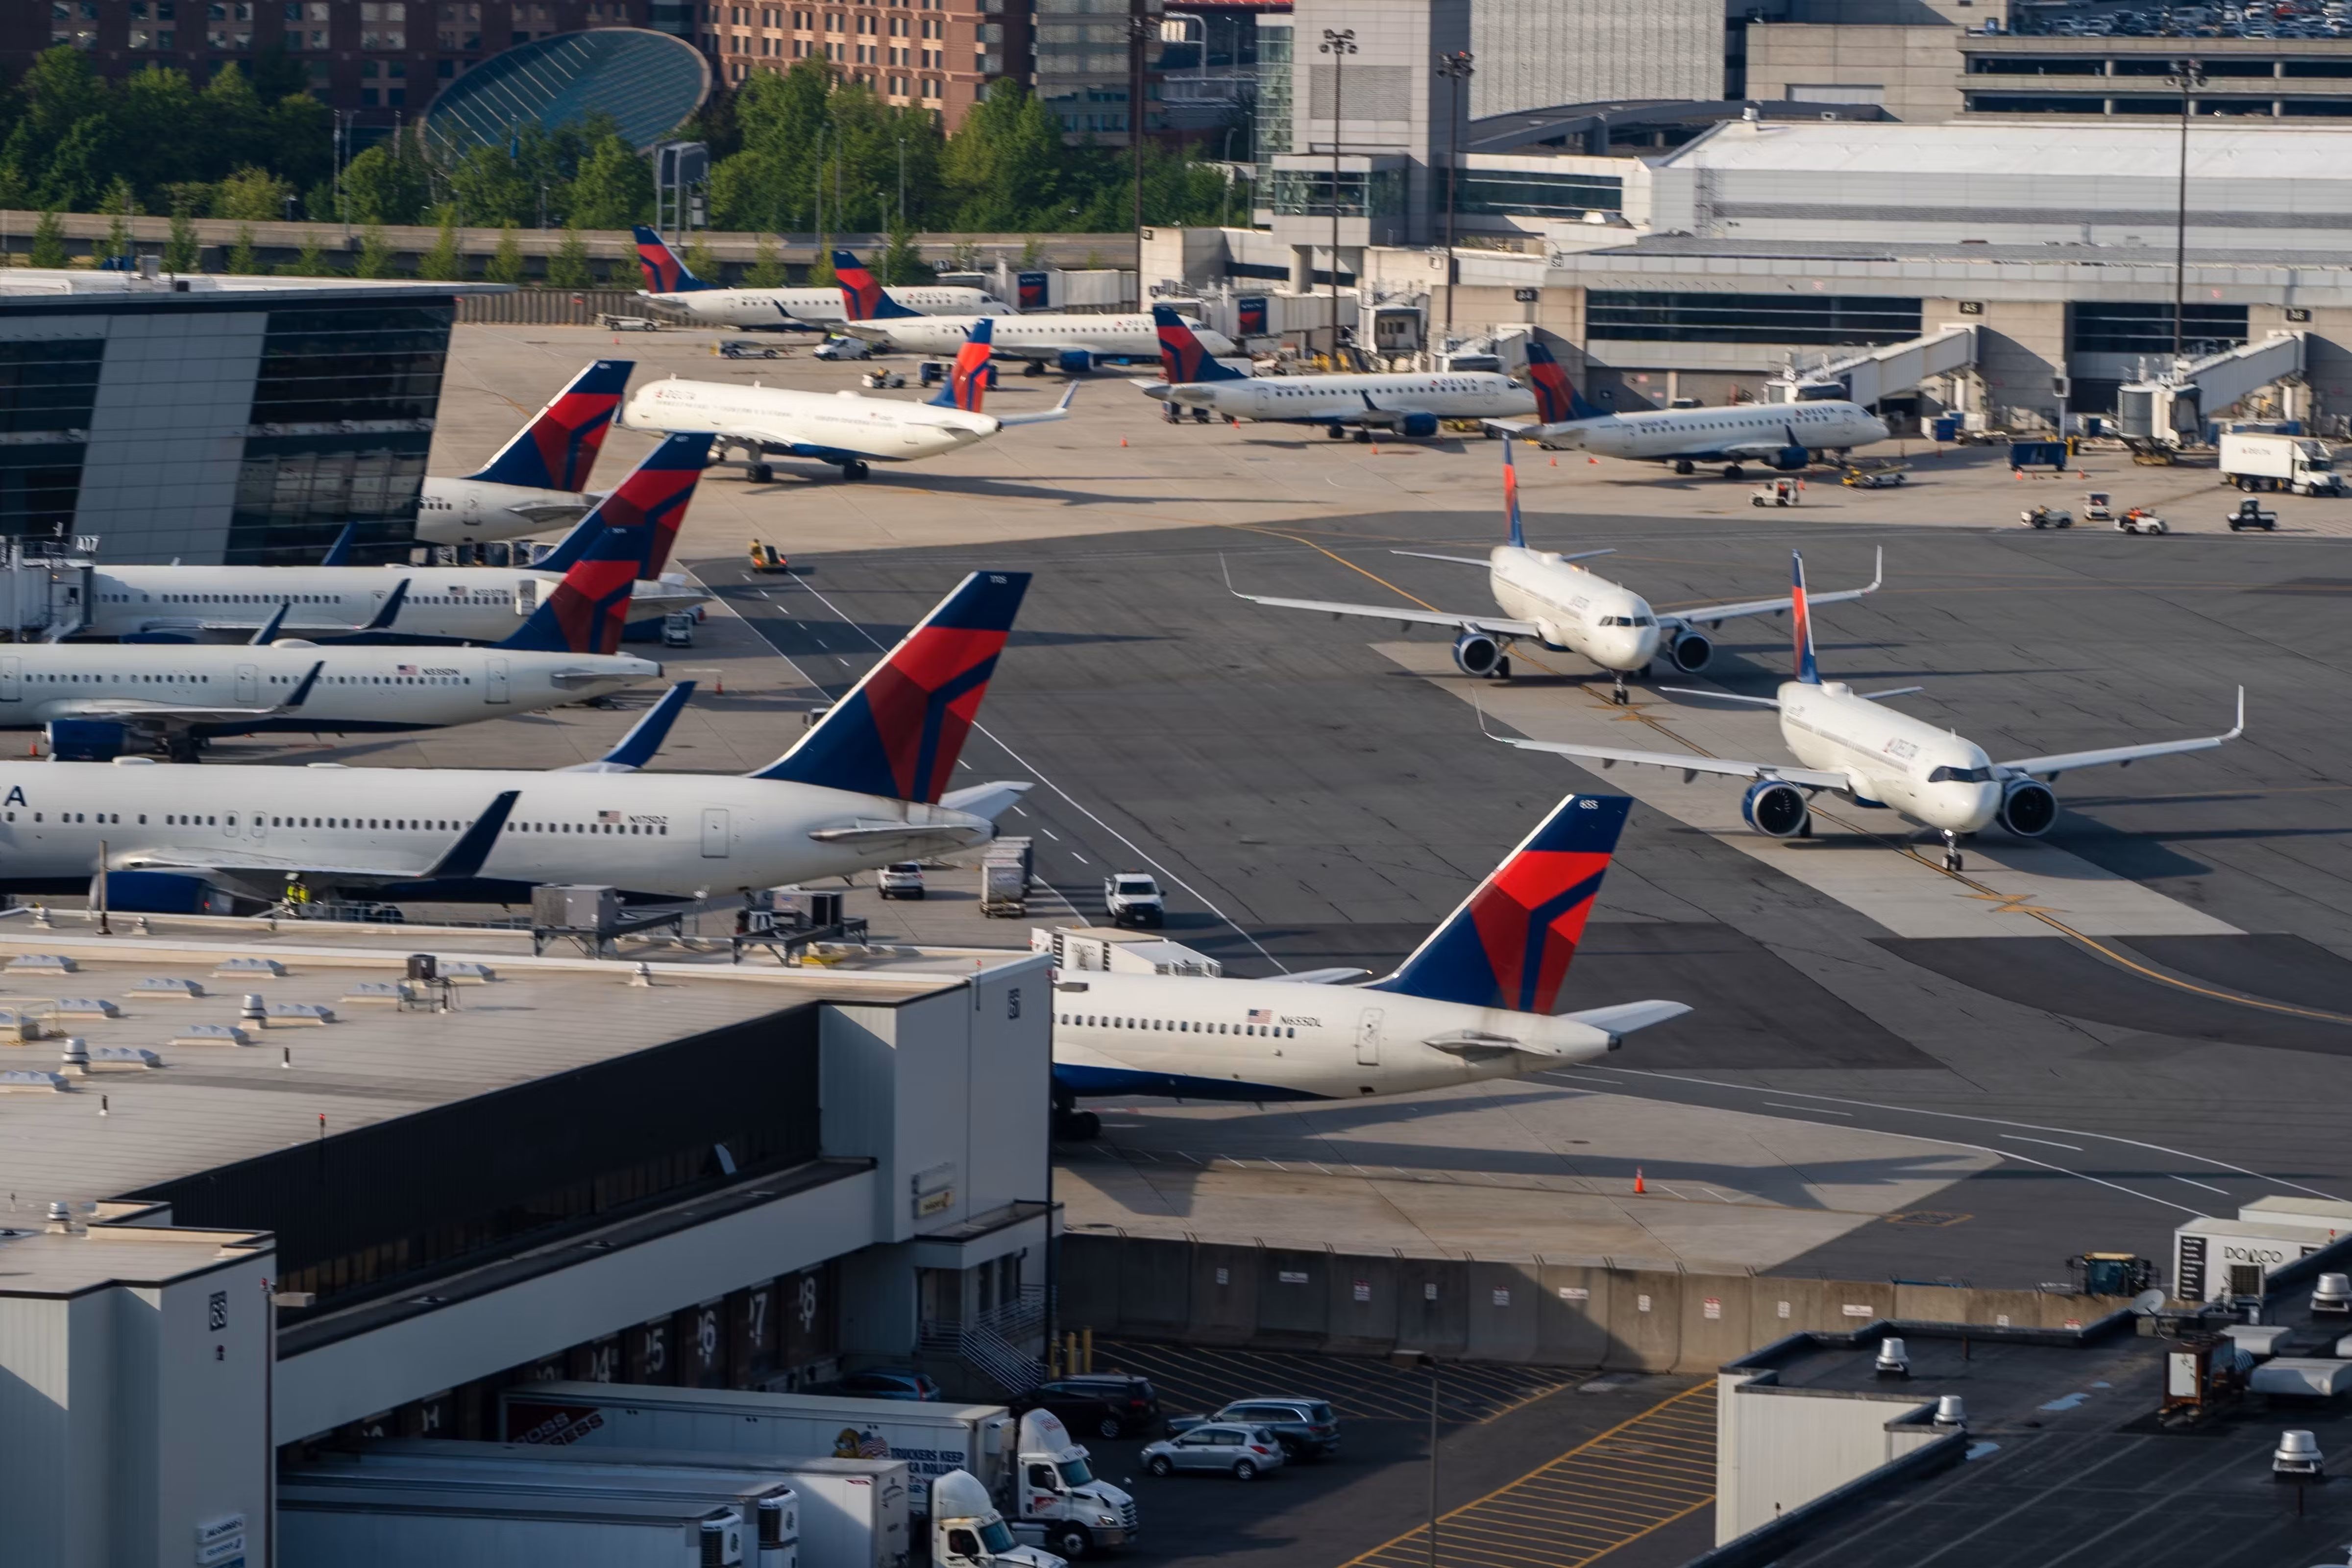 Several Delta Air Lines Aircraft on the apron at Boston Logan International Airport.